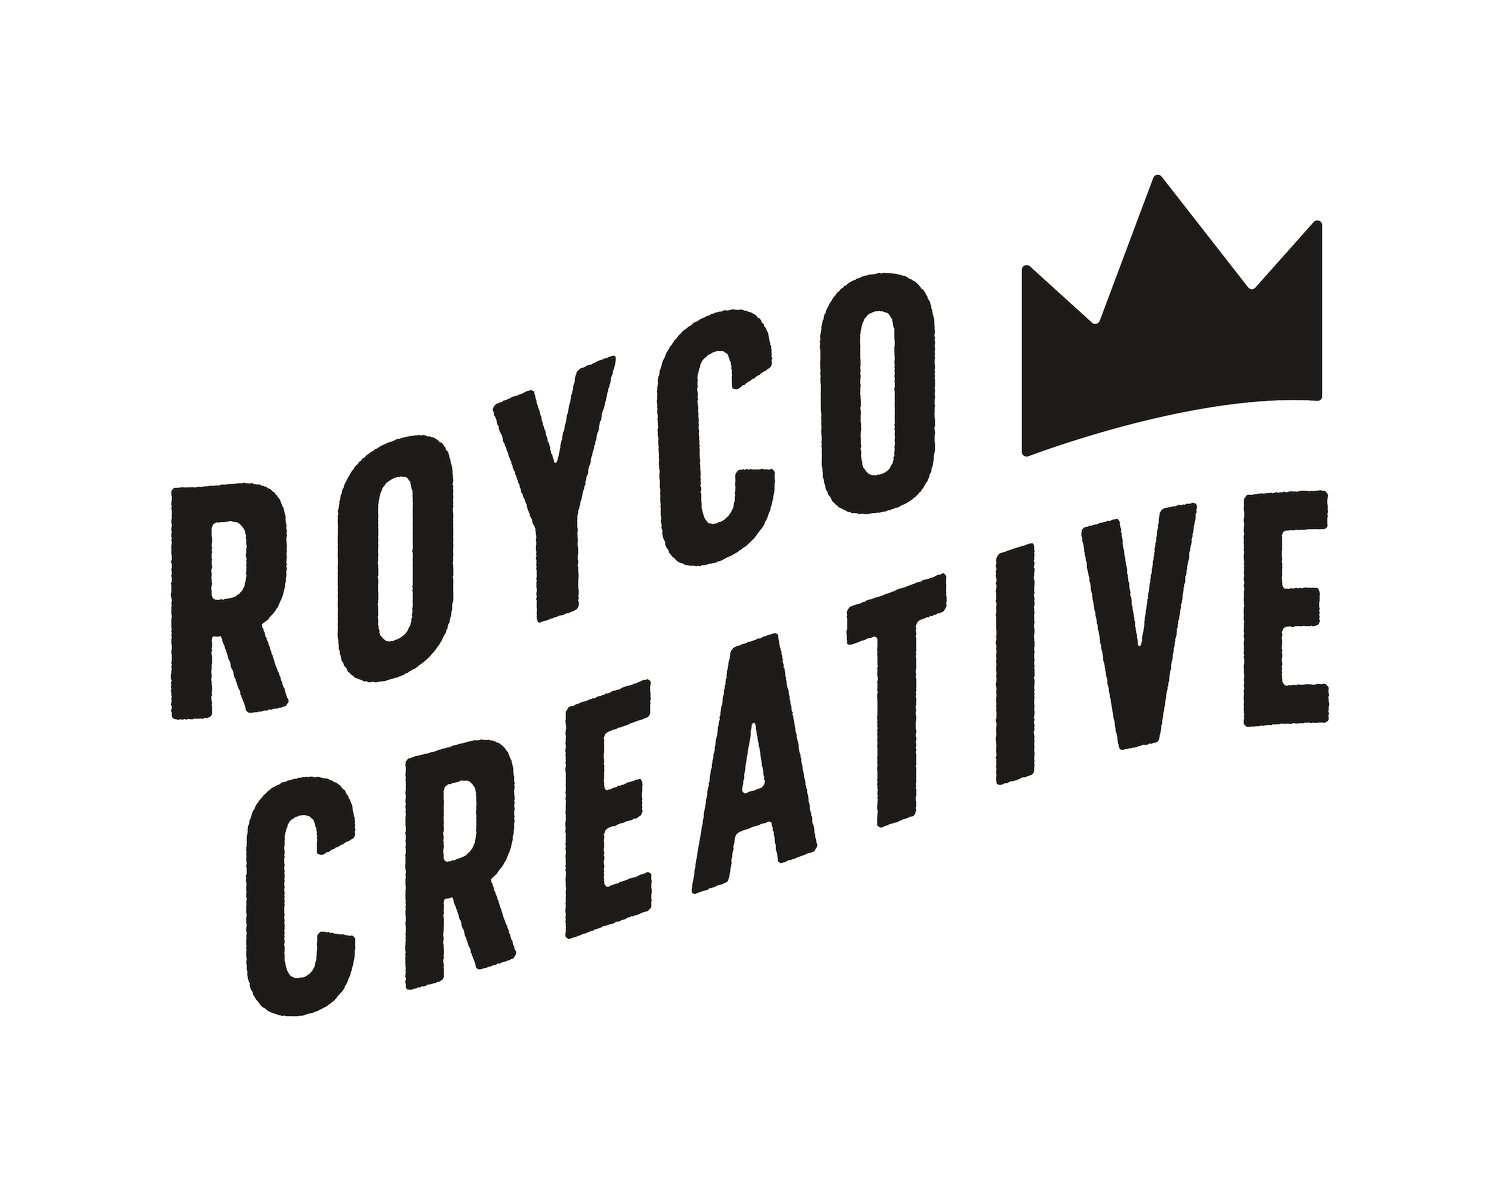 Royco Creative